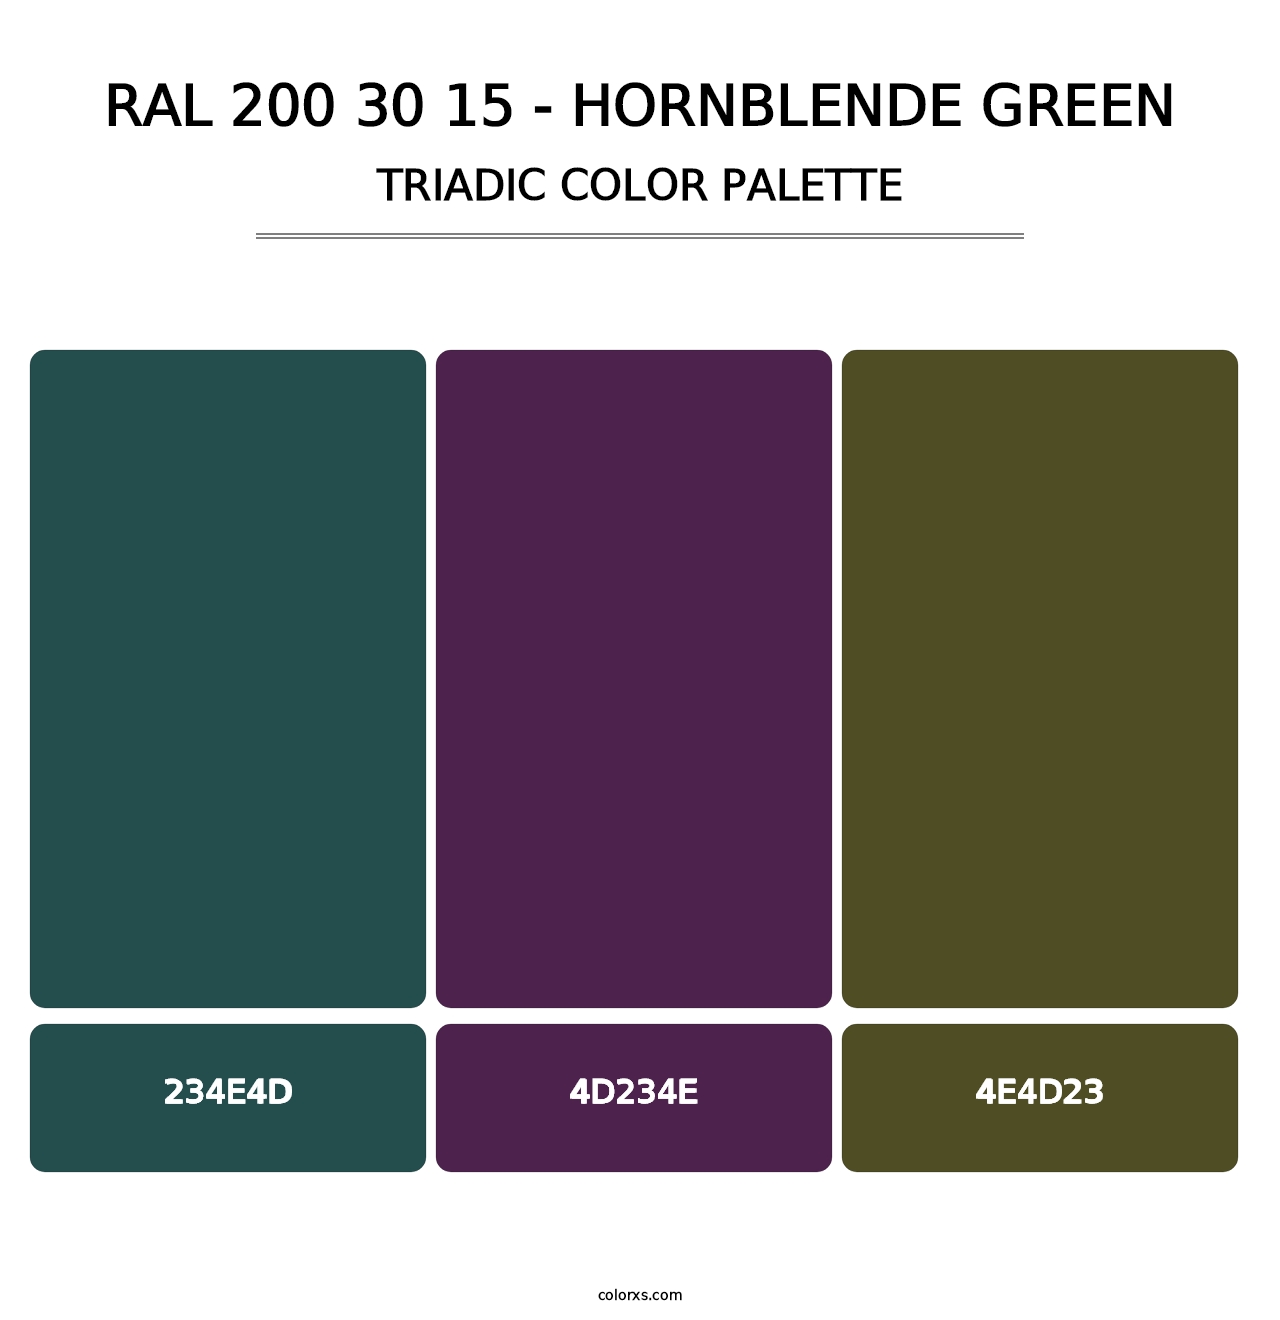 RAL 200 30 15 - Hornblende Green - Triadic Color Palette